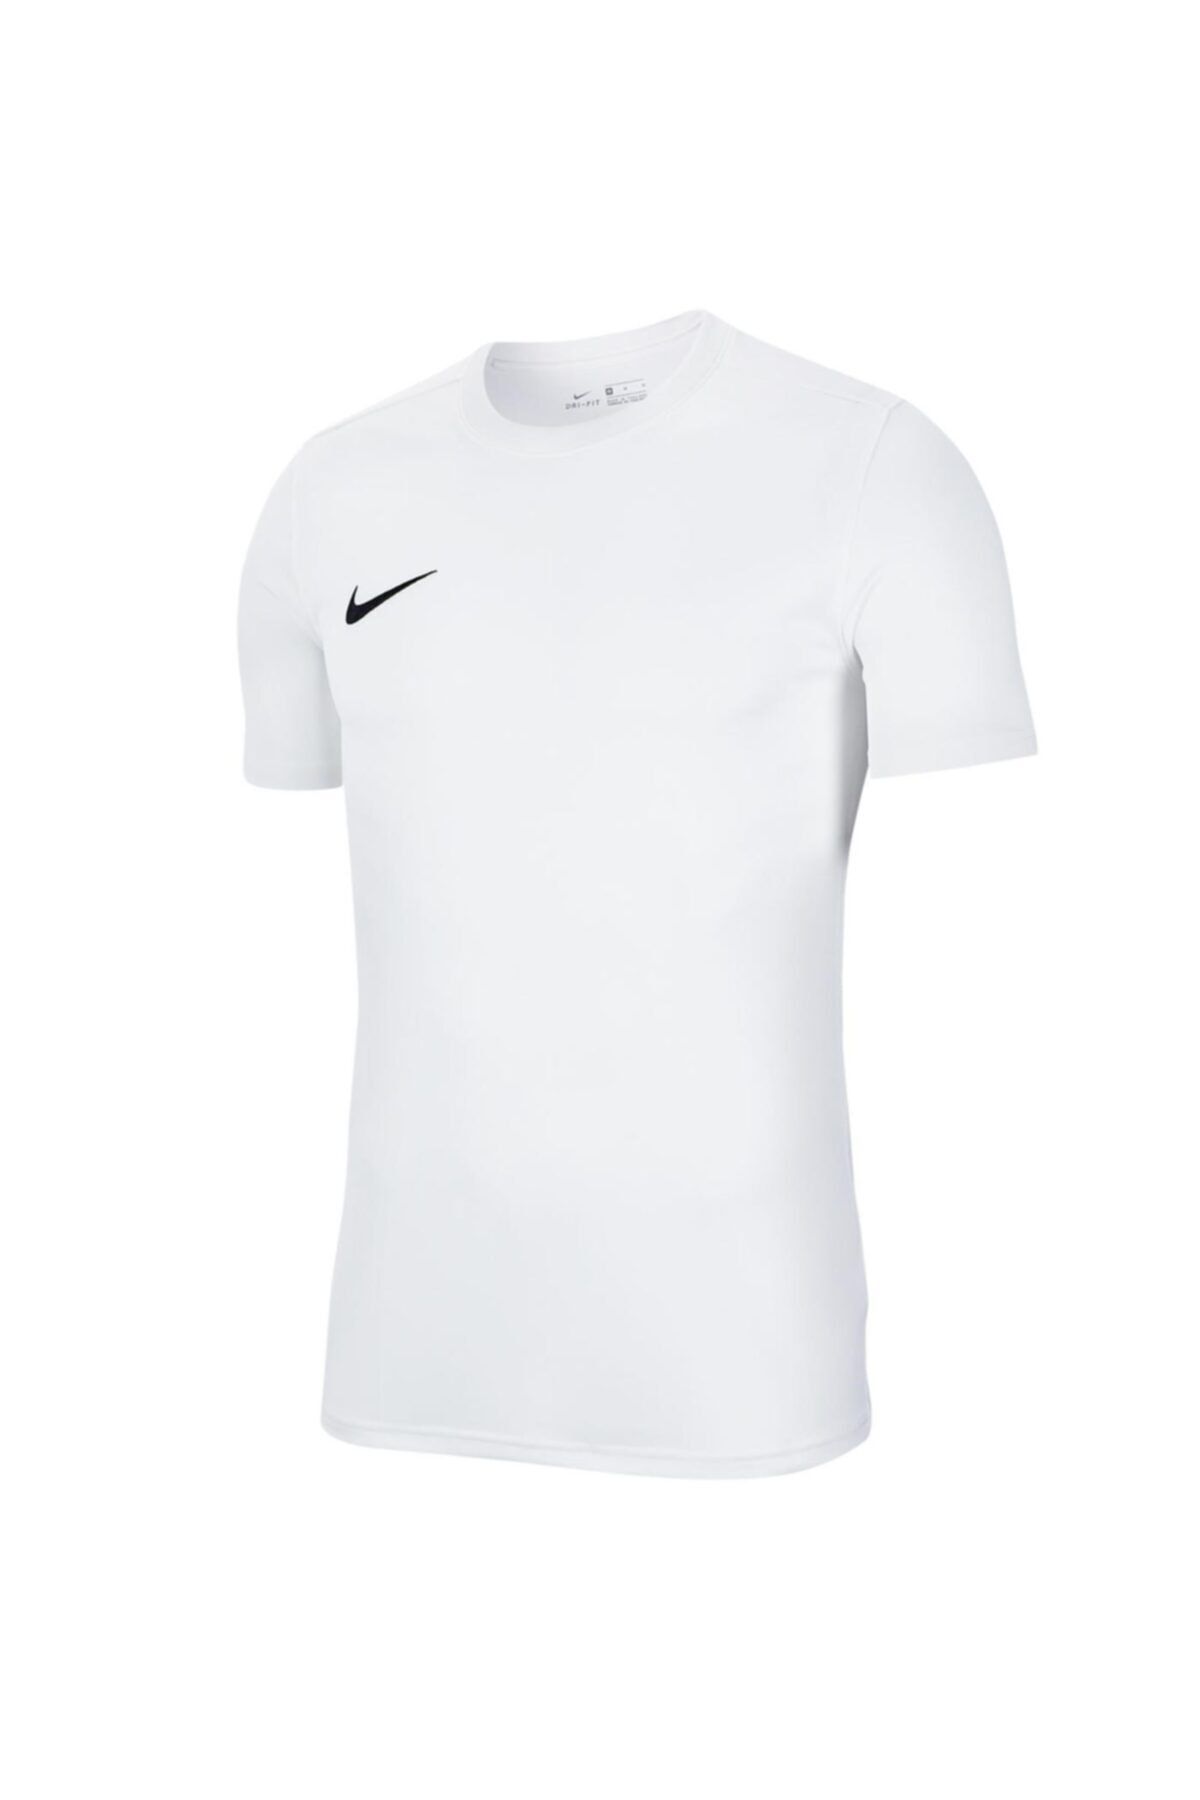 Nike M Nk Dry Park Vıı Jsy Ss Erkek T-shirt